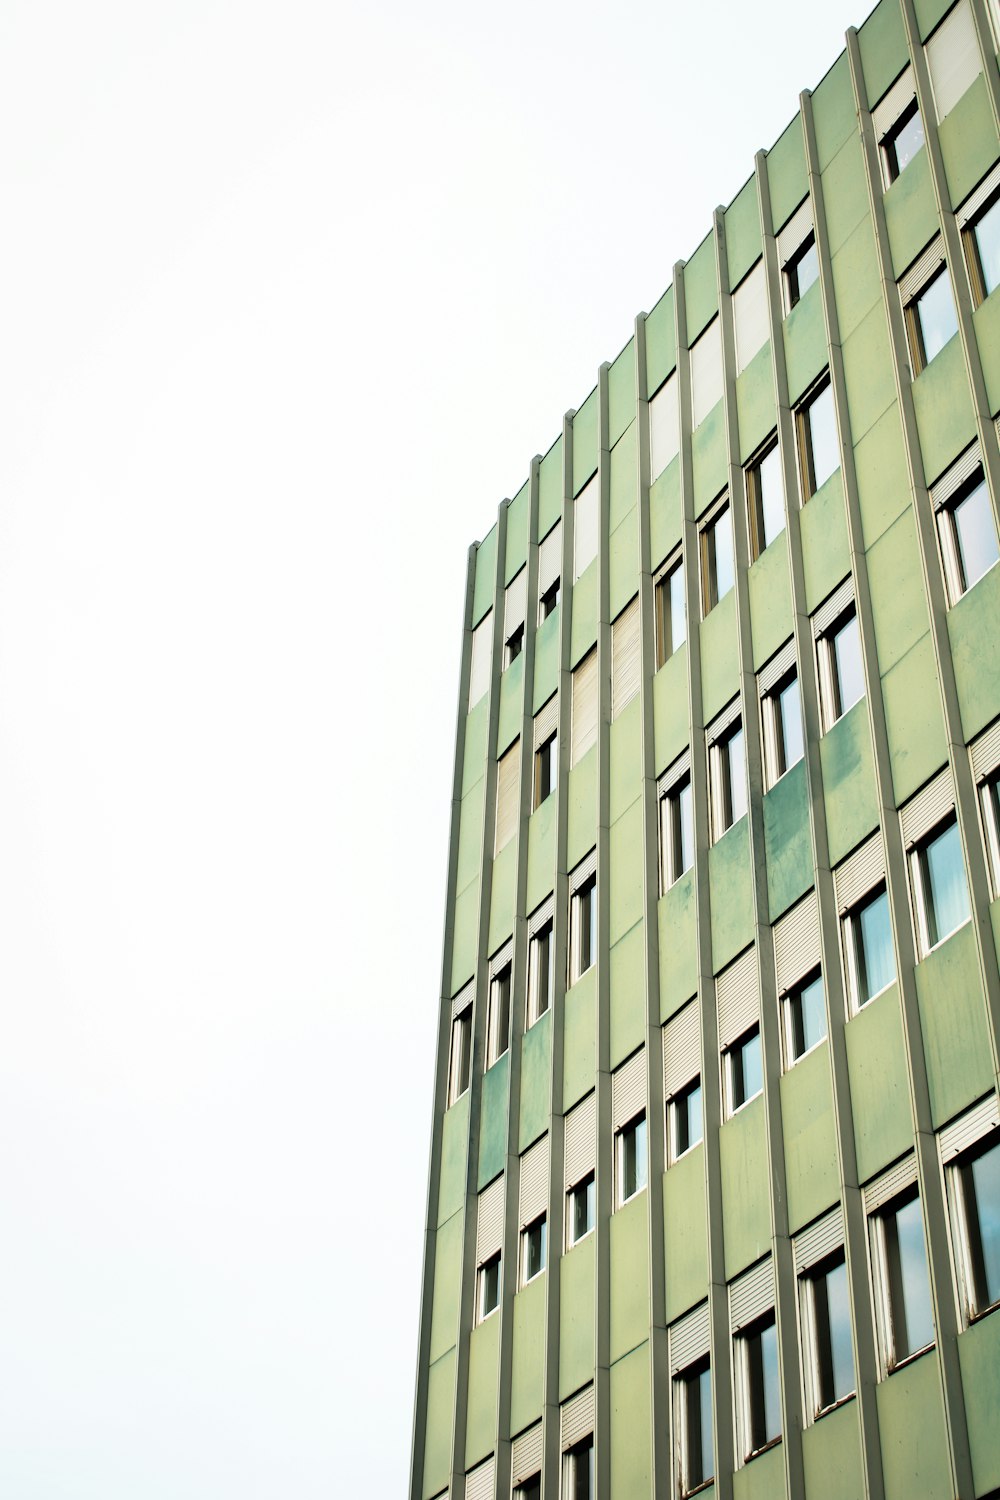 Ein hohes grünes Gebäude mit vielen Fenstern